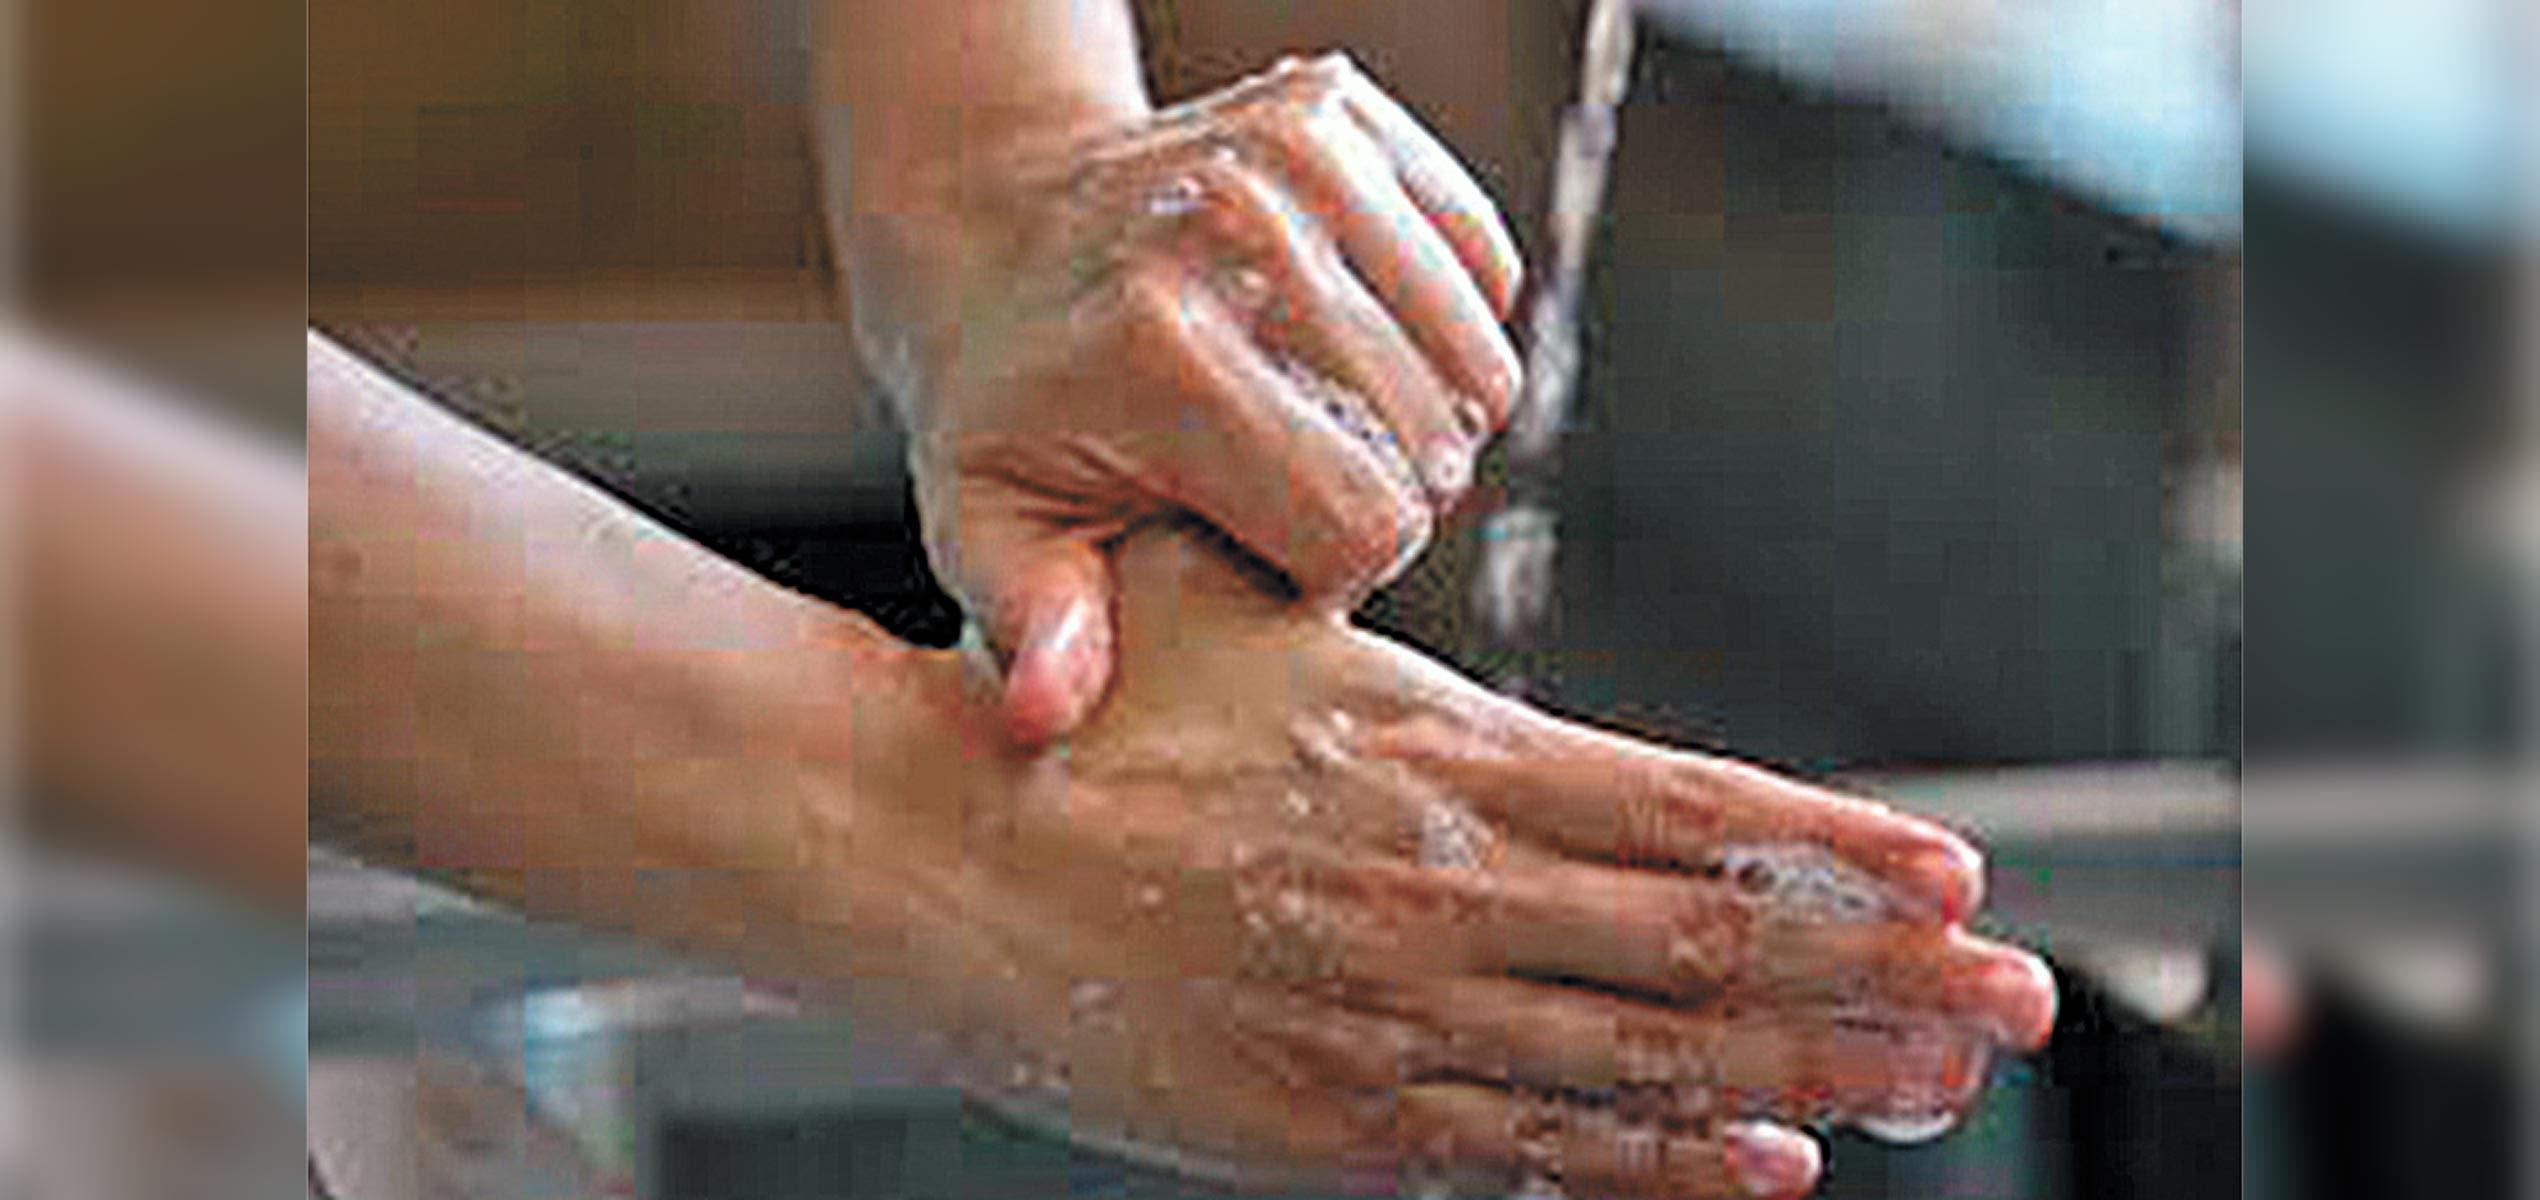 Lavado de manos, básico contra infeccion...